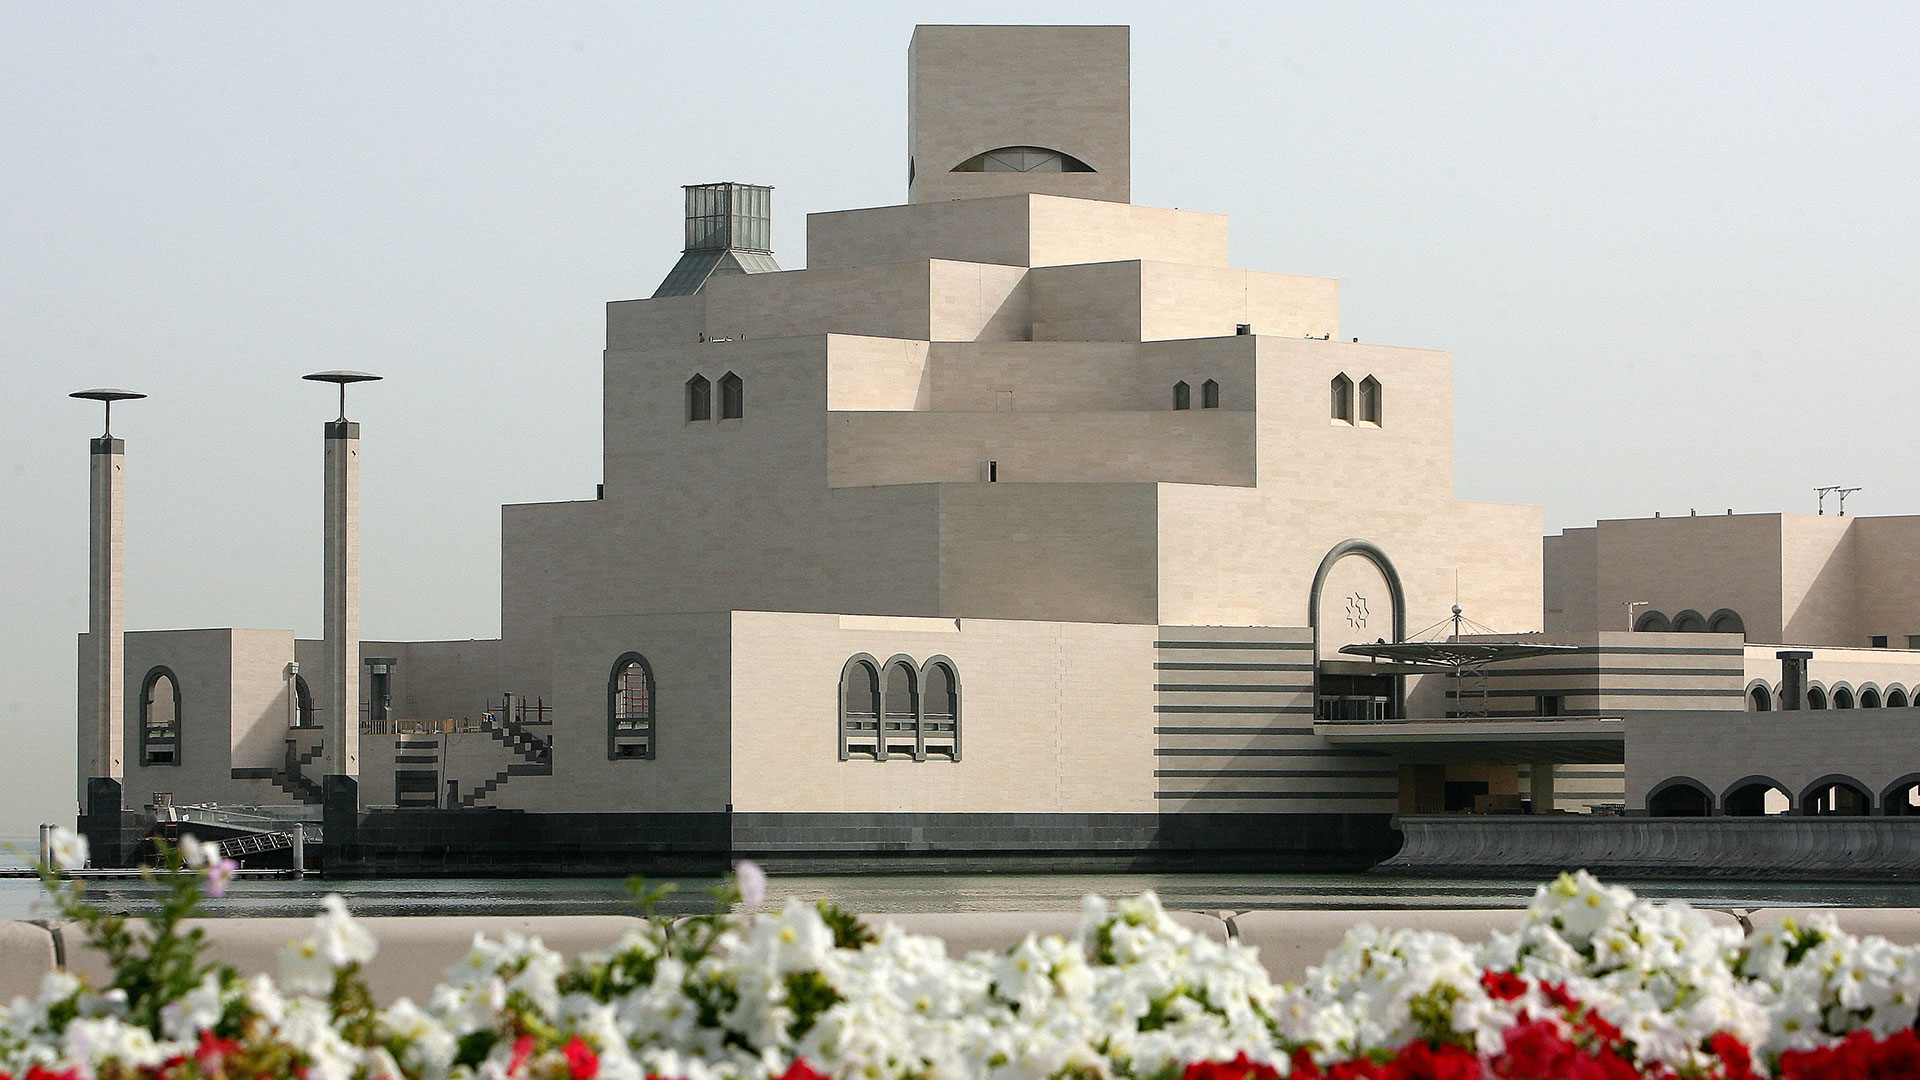 Vista general del Museo Islámico de Arte, diseñado por el arquitecto I.M. Pei en Doha, Qatar (Foto: Karim JAAFAR / AFP)